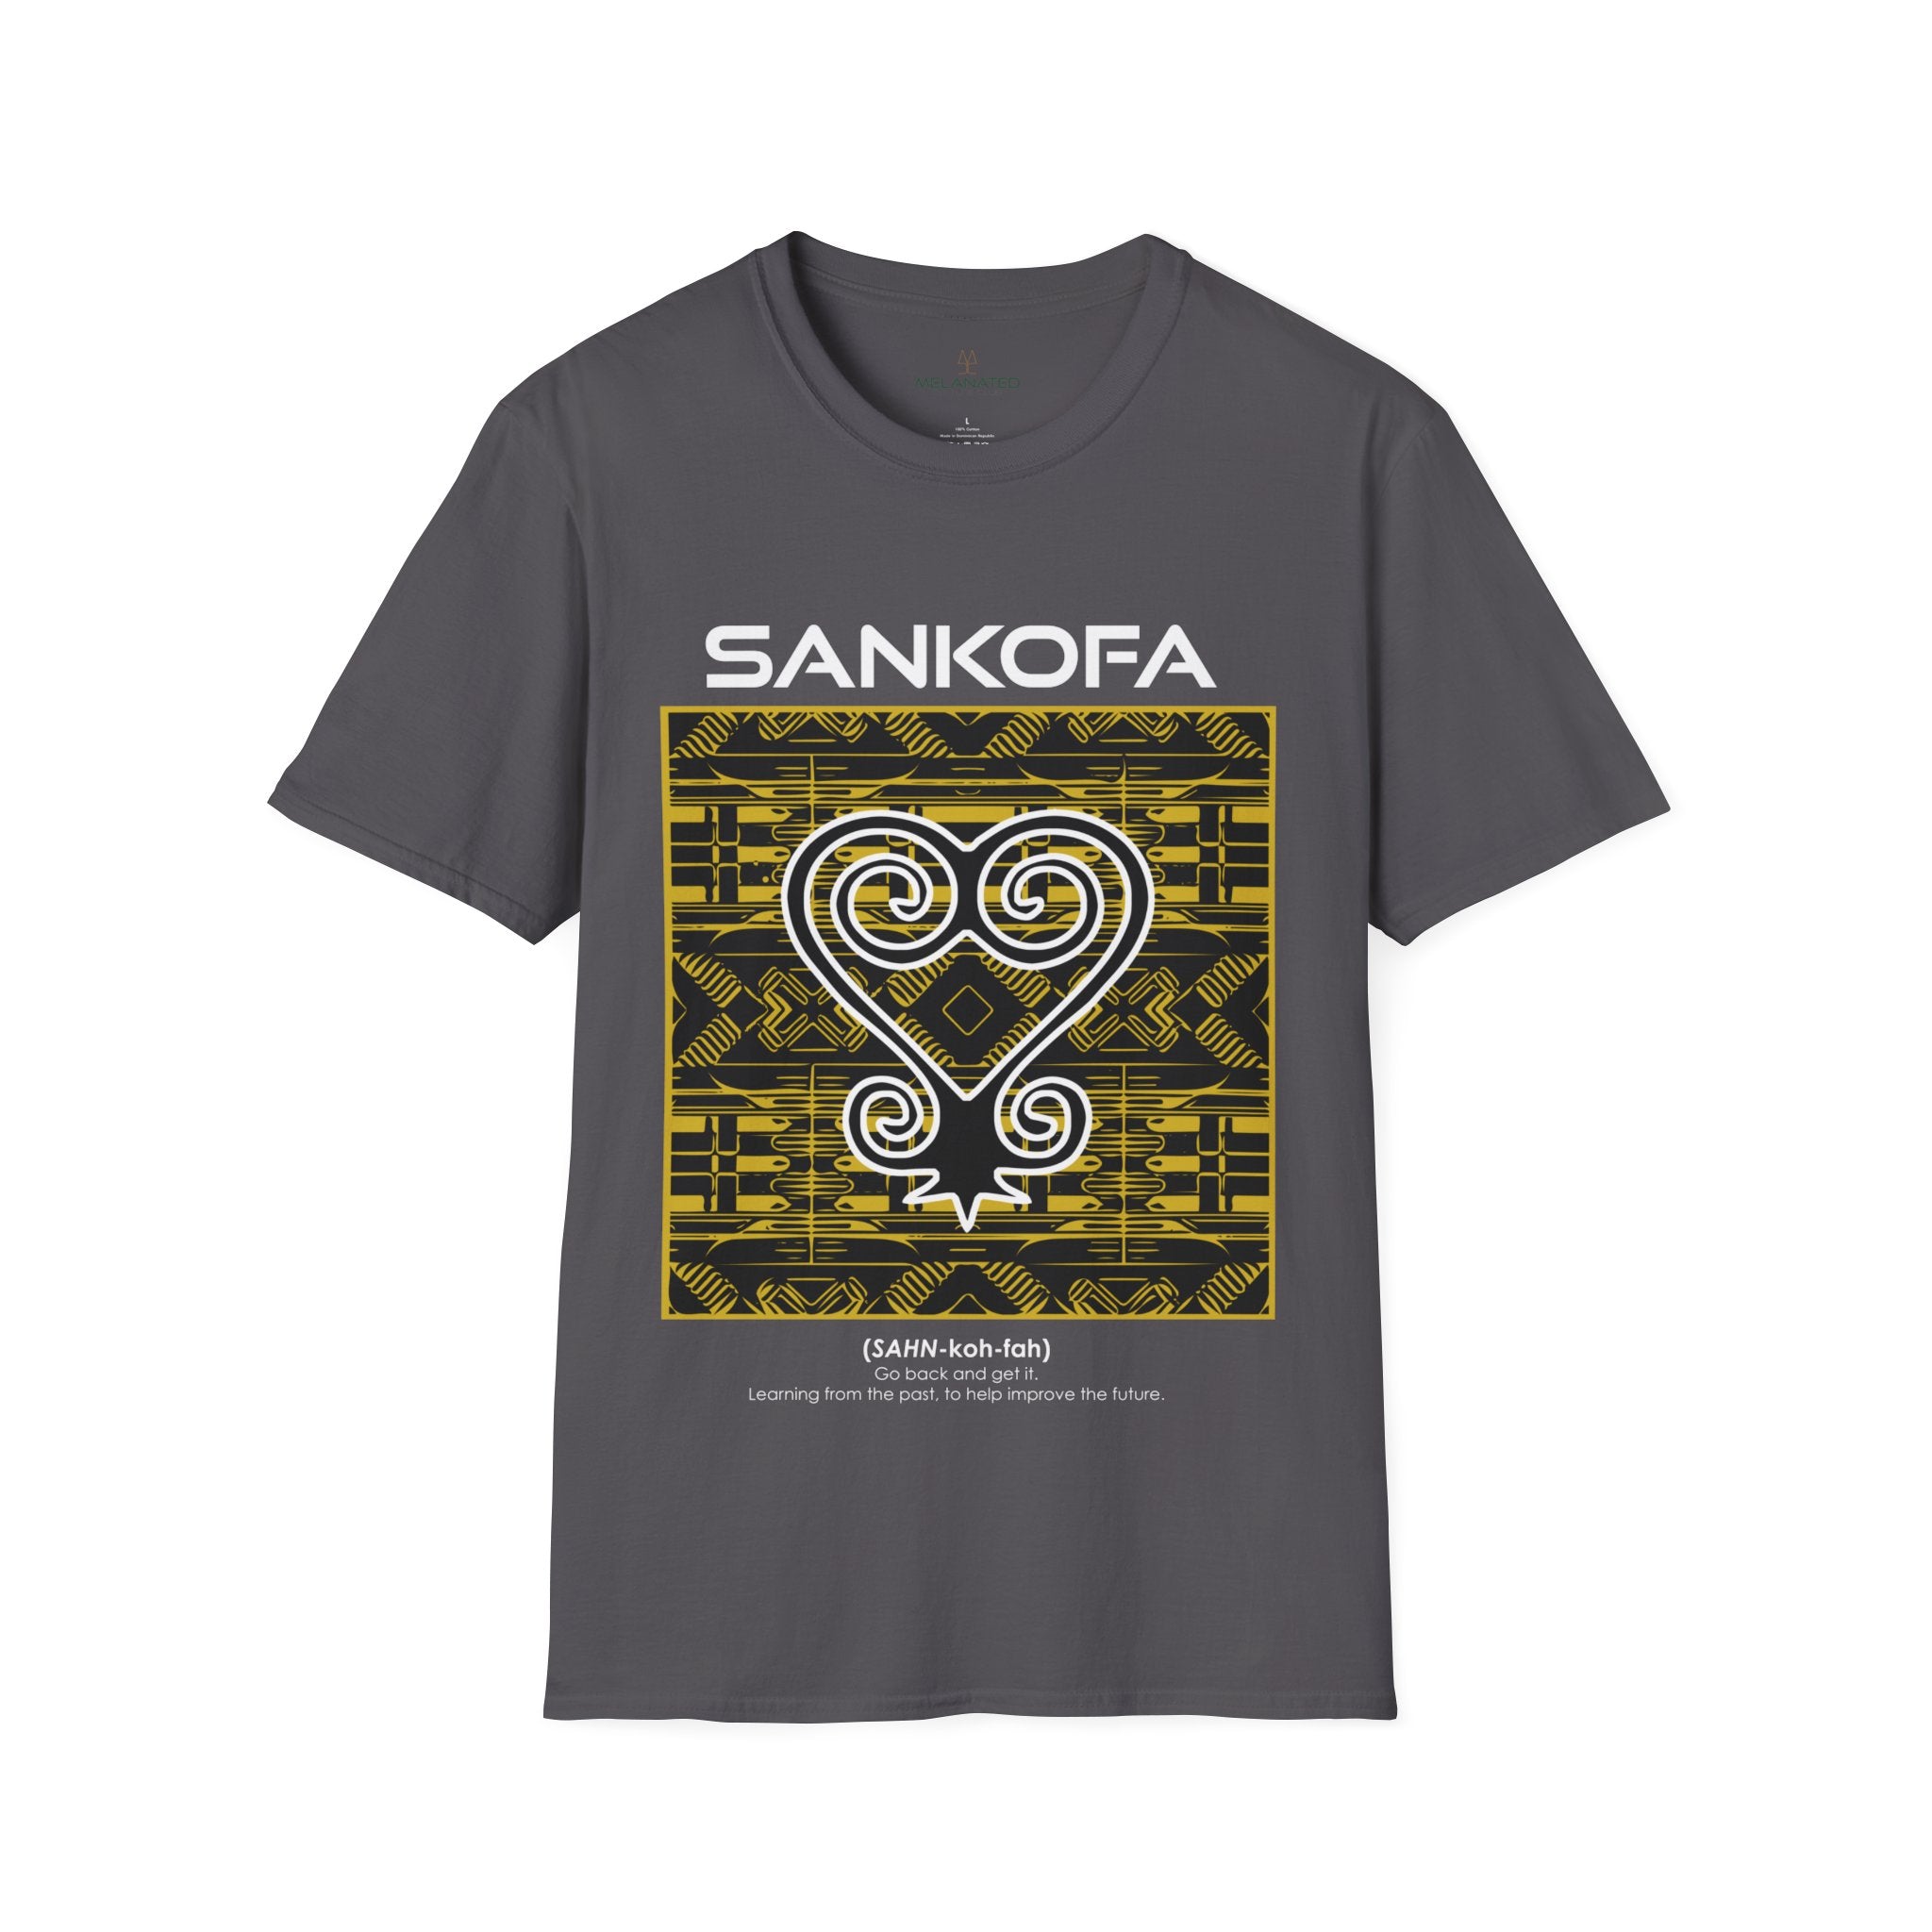 Adinka Sankofa African Tee Shirt in grey.